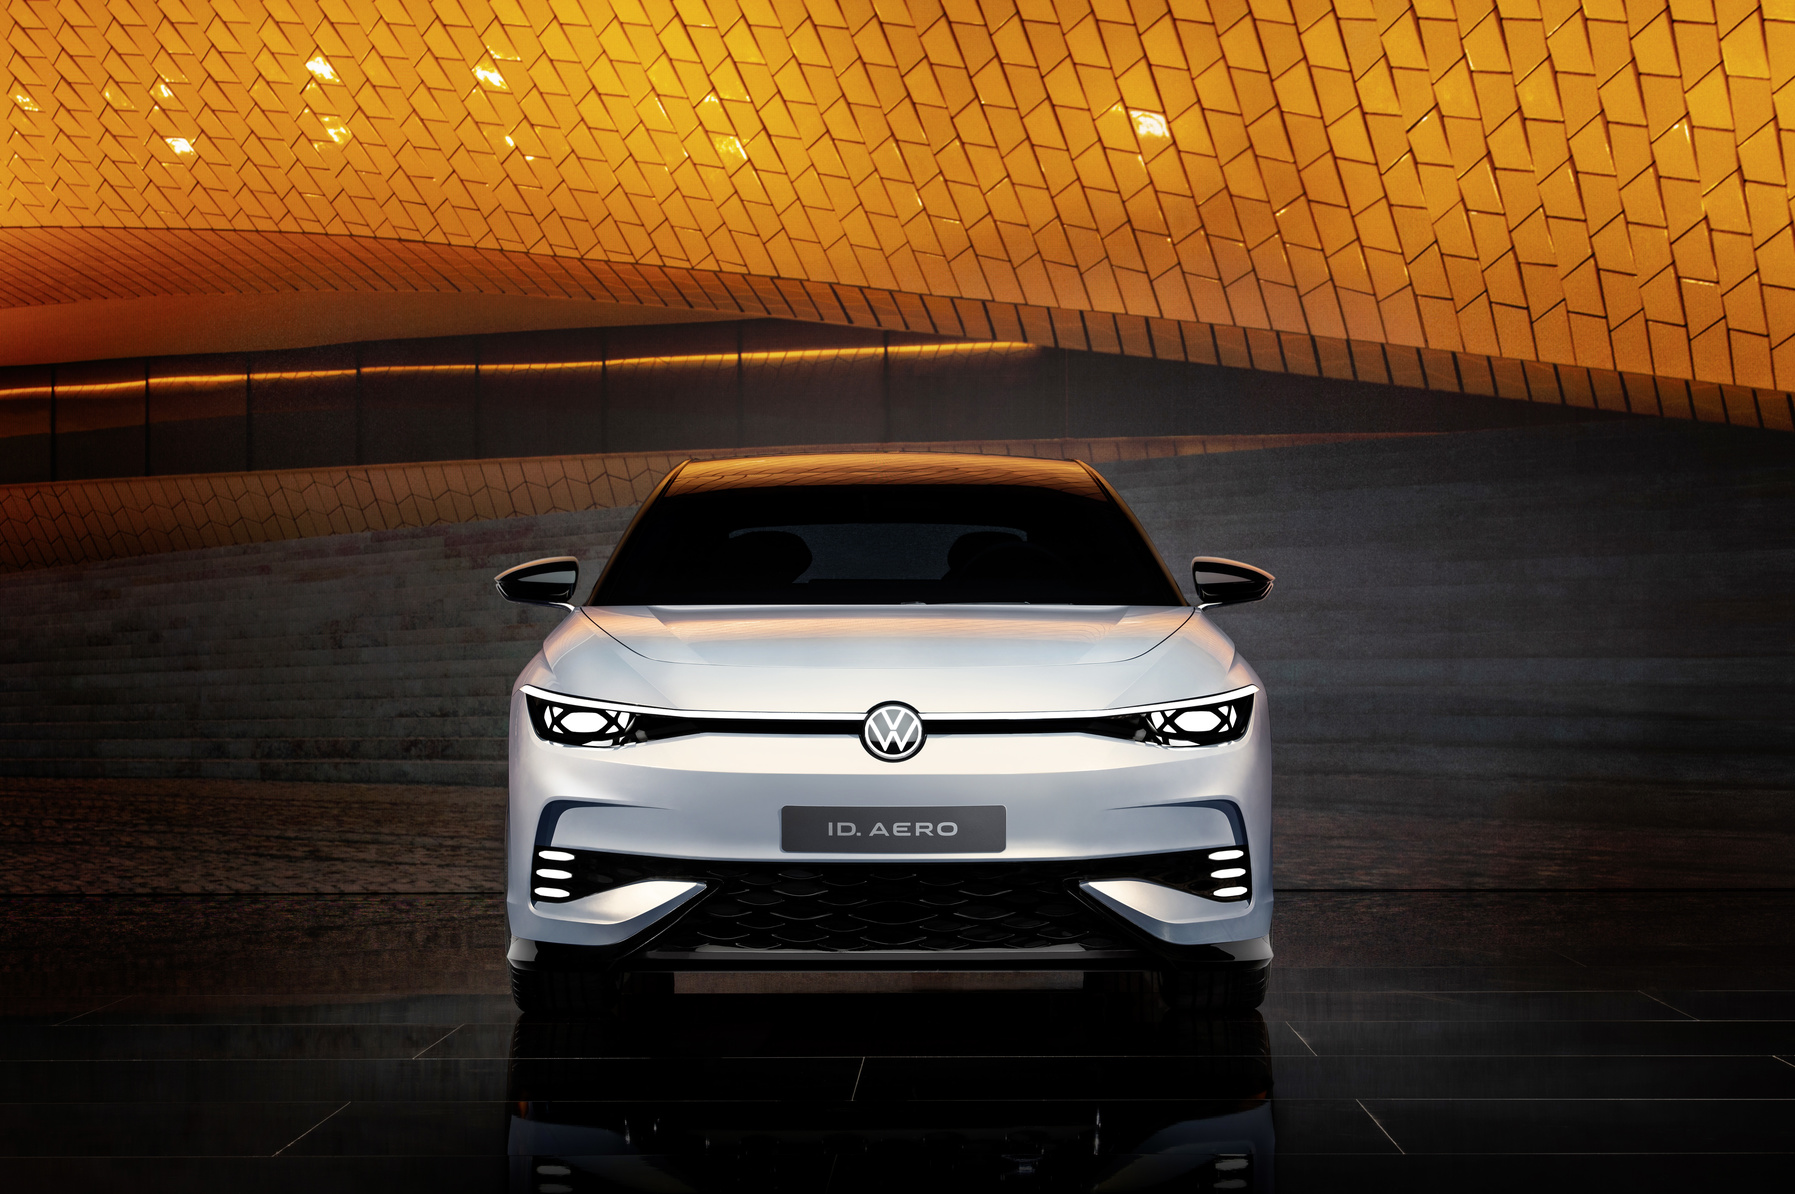 Calendrier des nouveautés – Découvrez les futures Volkswagen électriques : ID.1, ID.3 GTX, ID.7…